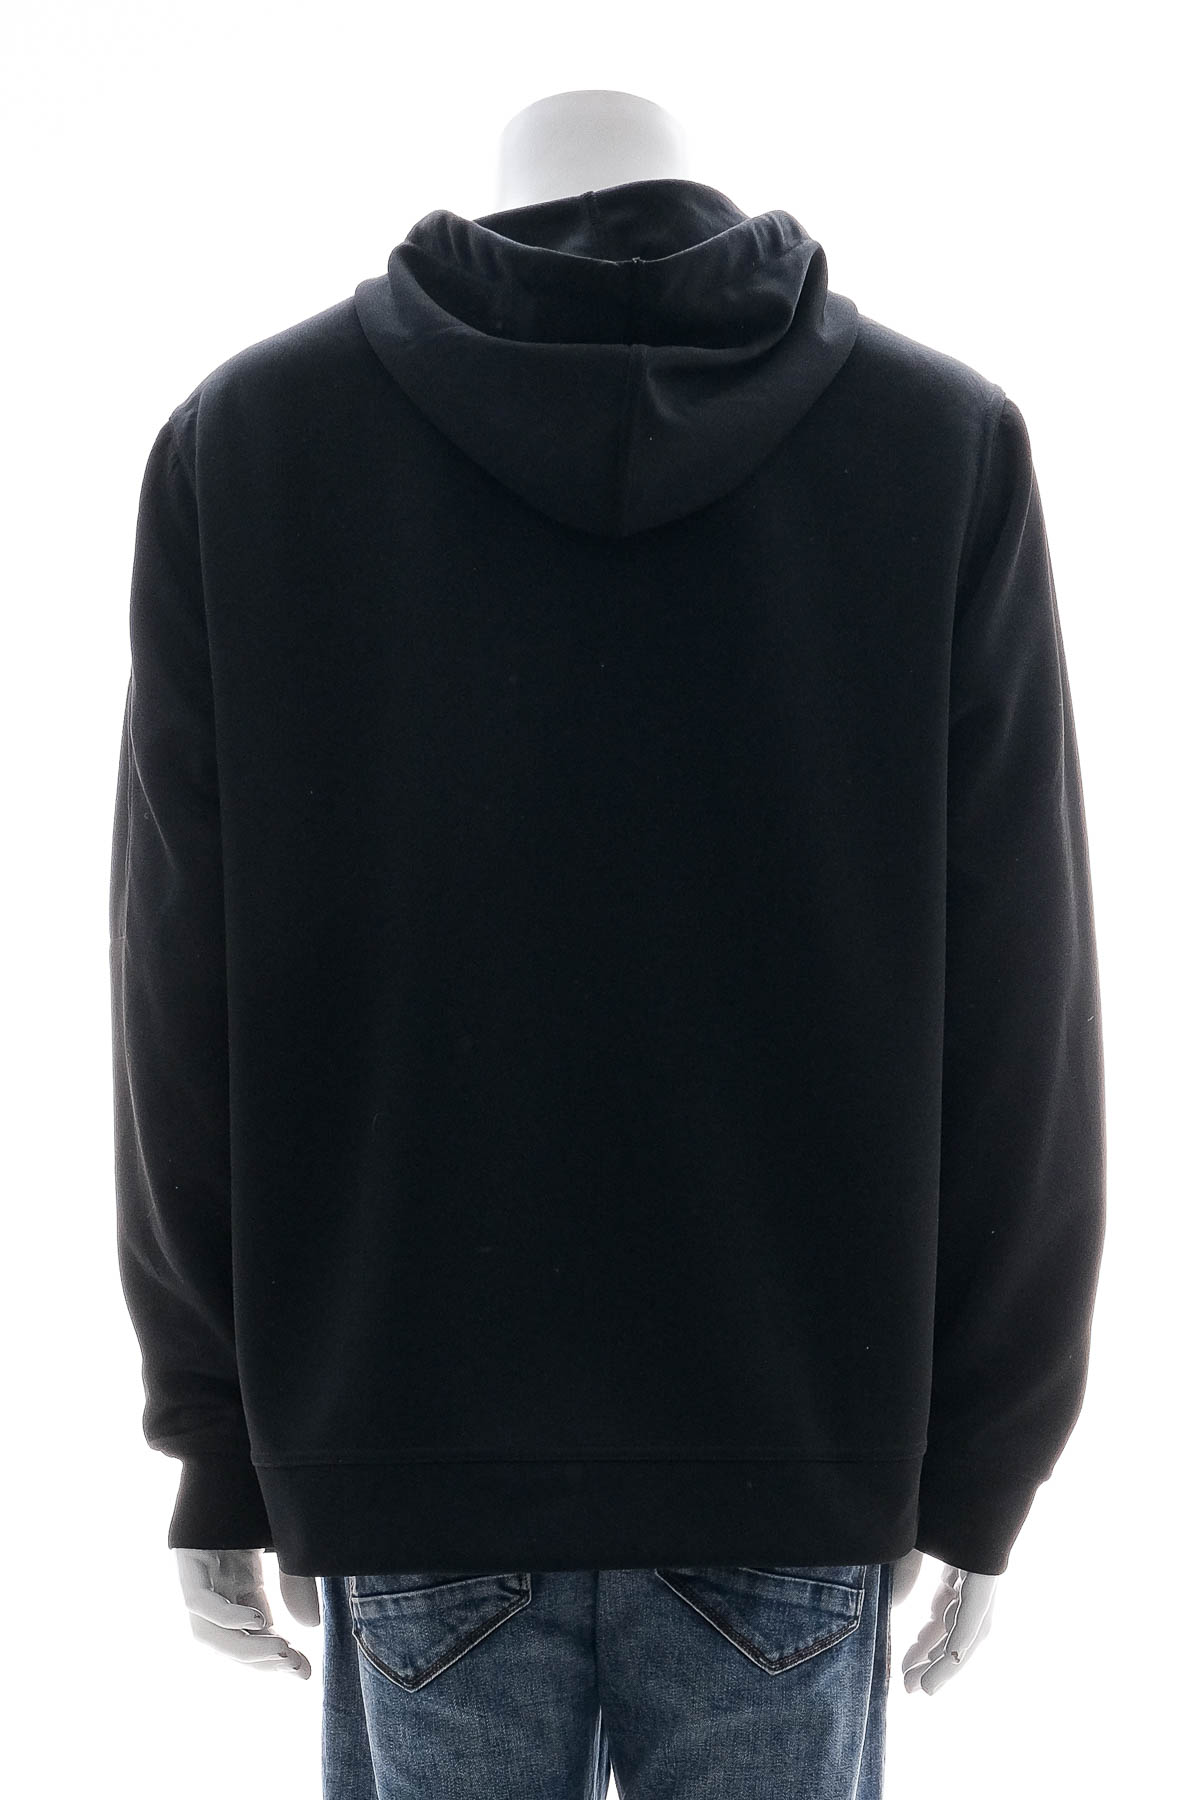 Men's sweatshirt - CLIQUE - 1